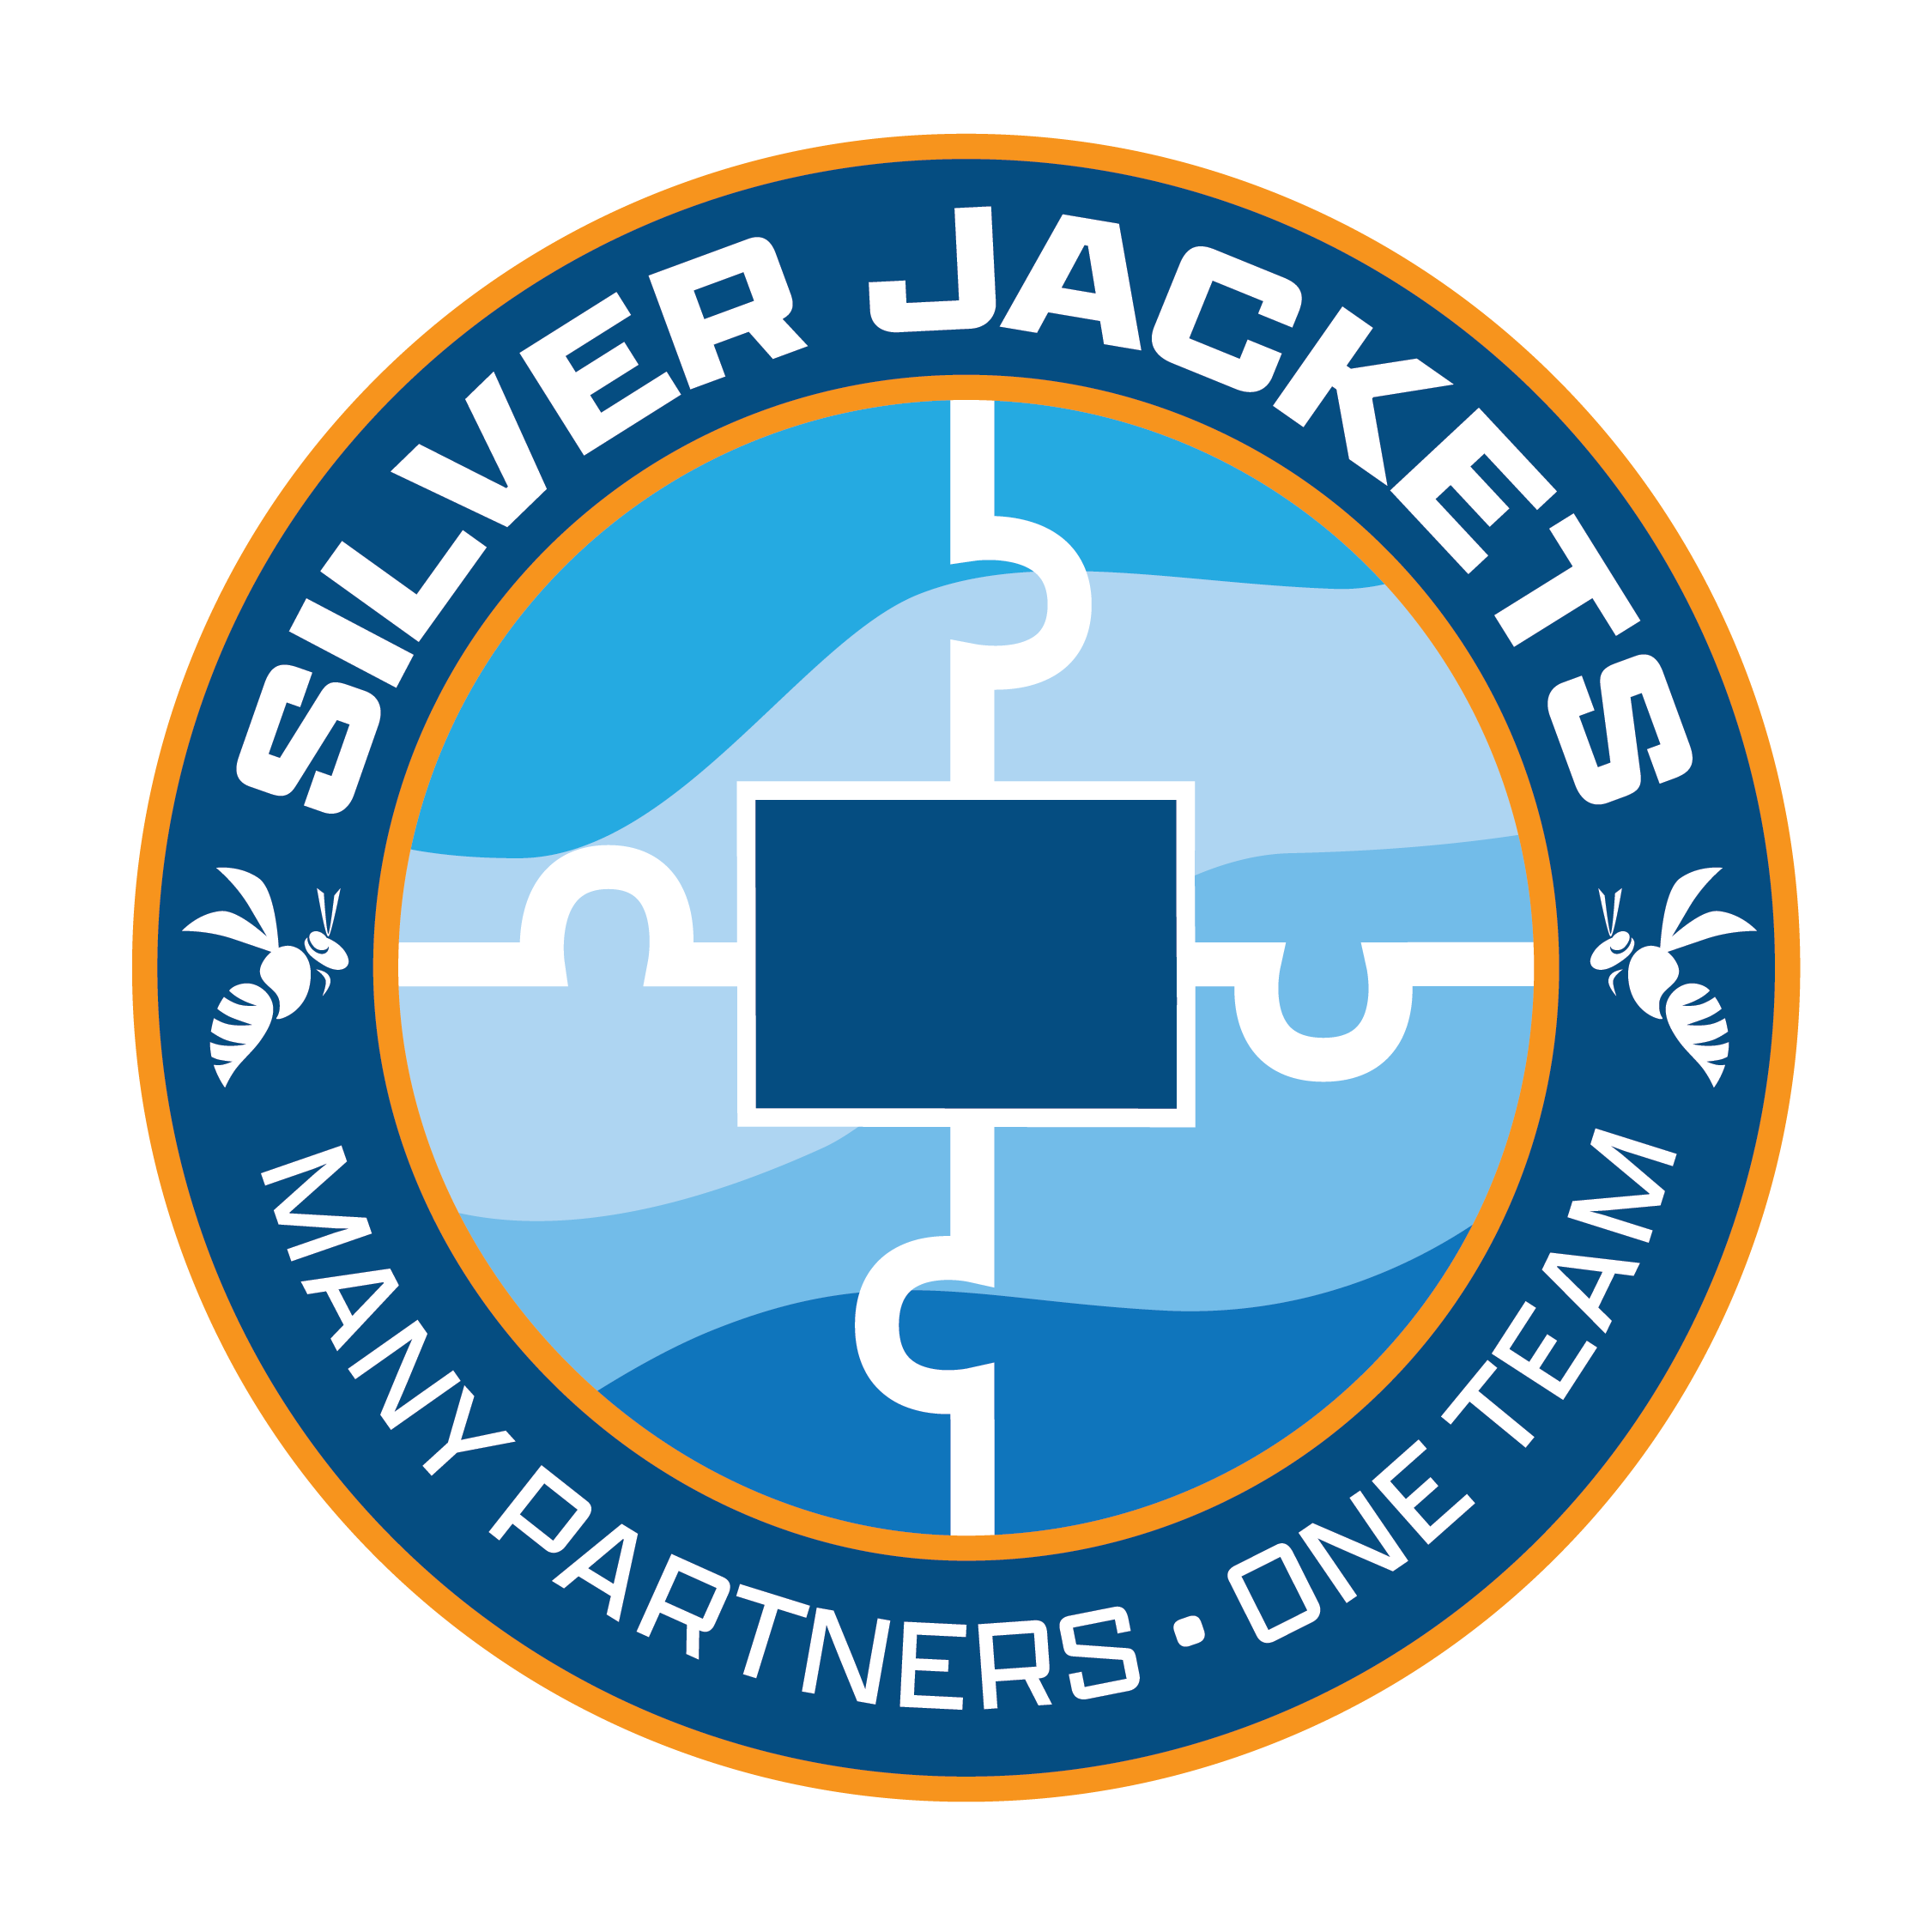 Colorado Silver Jackets logo